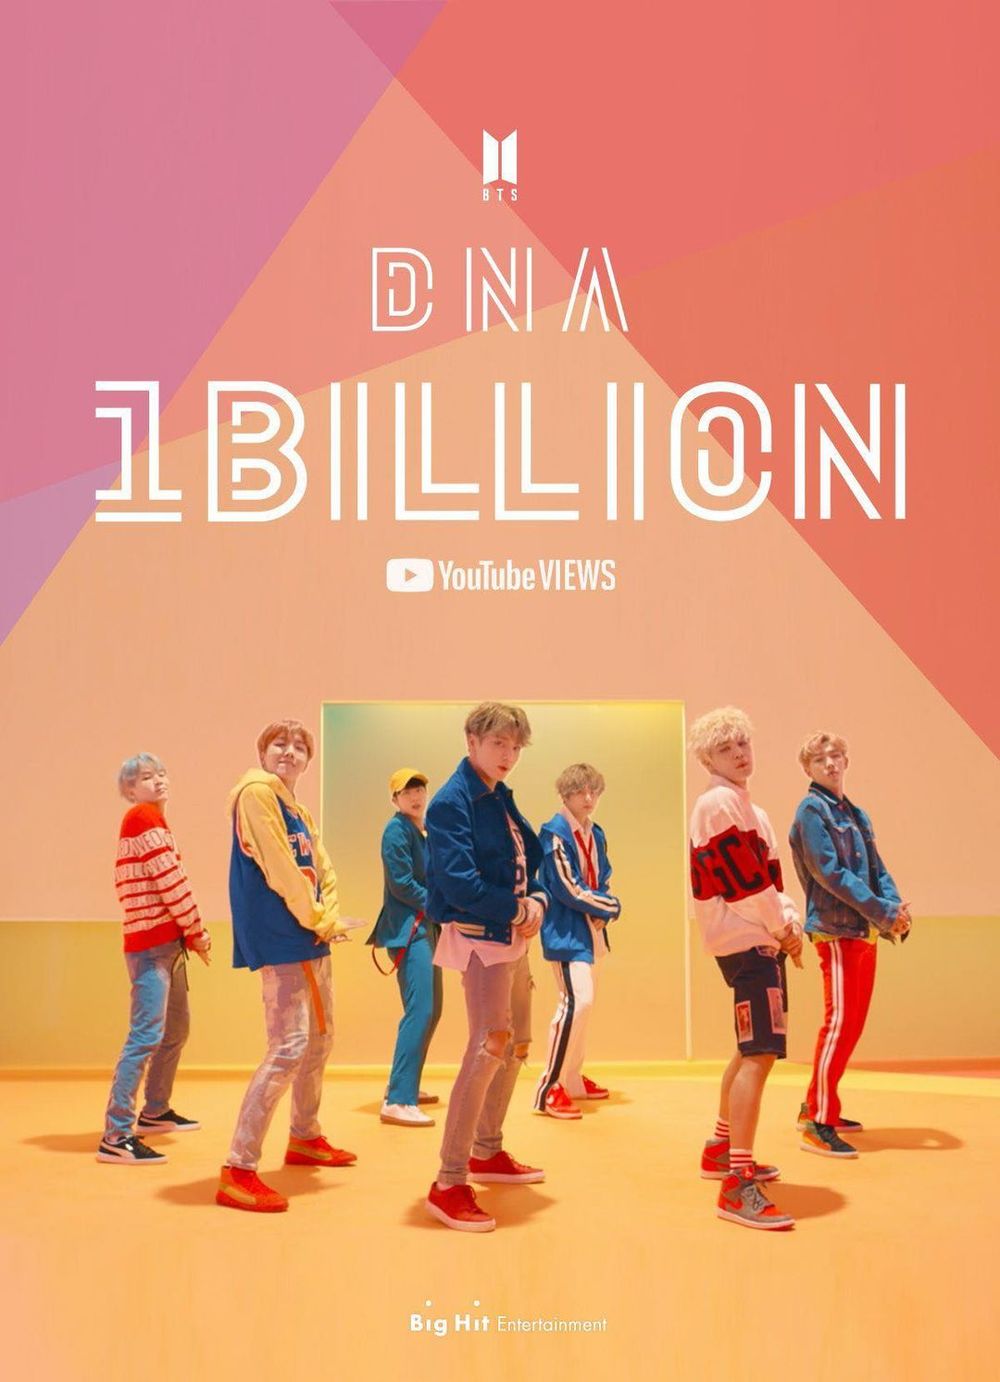  
DNA là MV đầu tiên của BTS chạm đến con số 1 tỷ lượt xem. (Ảnh: Instagram)